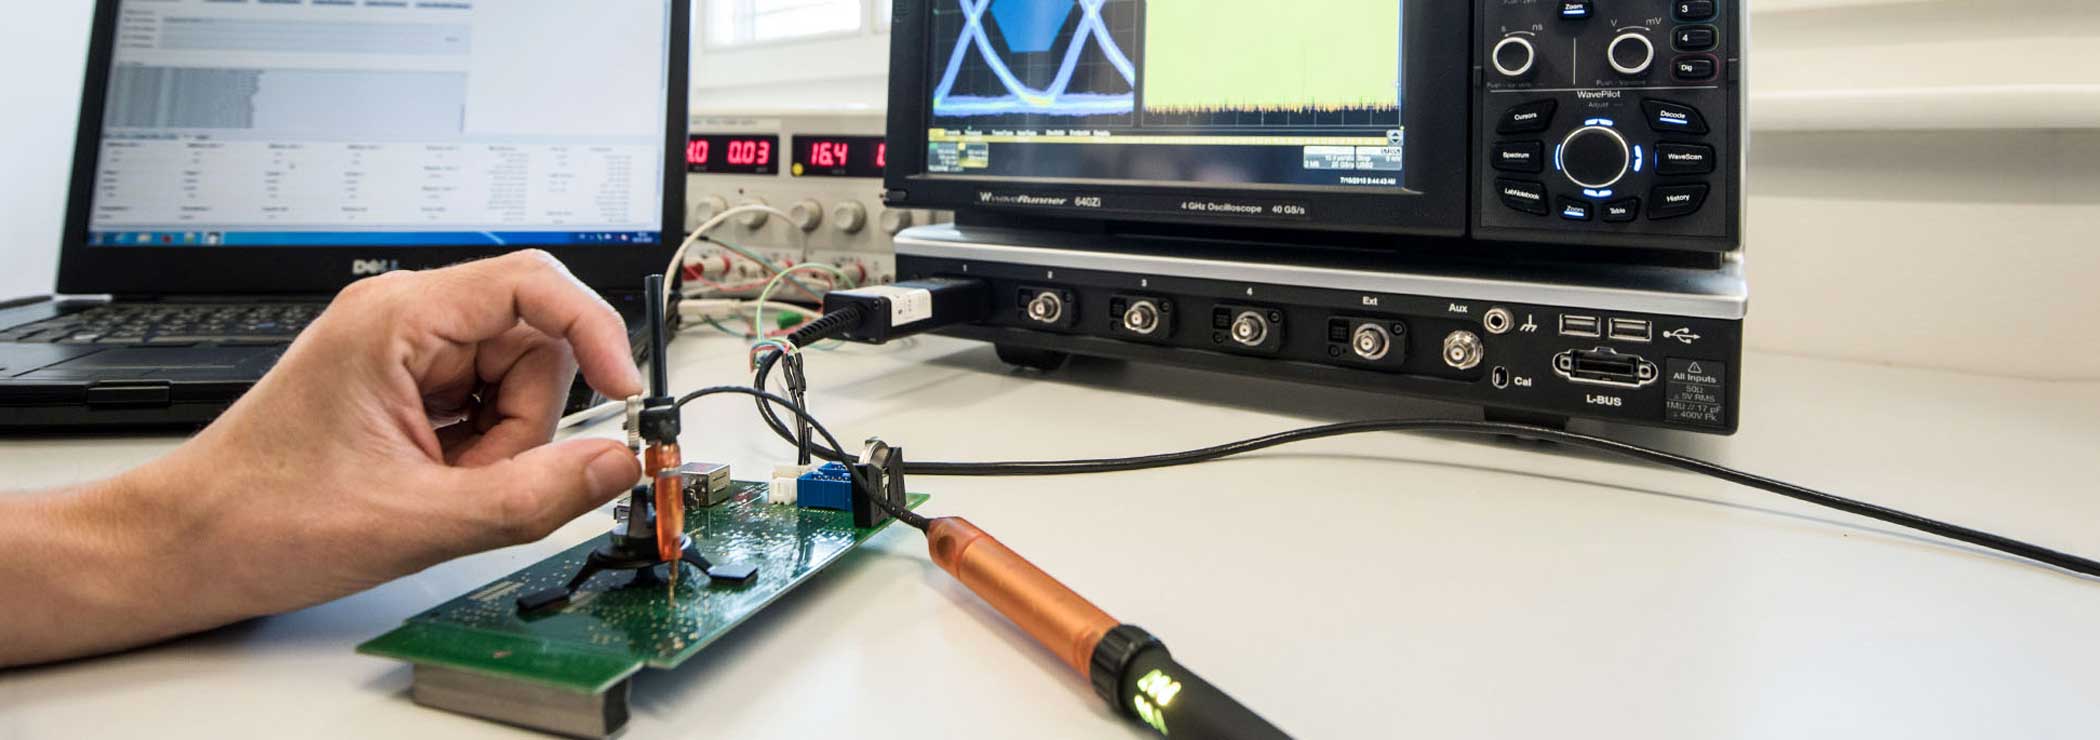 Messung von USB Parametern mit Hochgeschwindigkeits-Oszilloskop